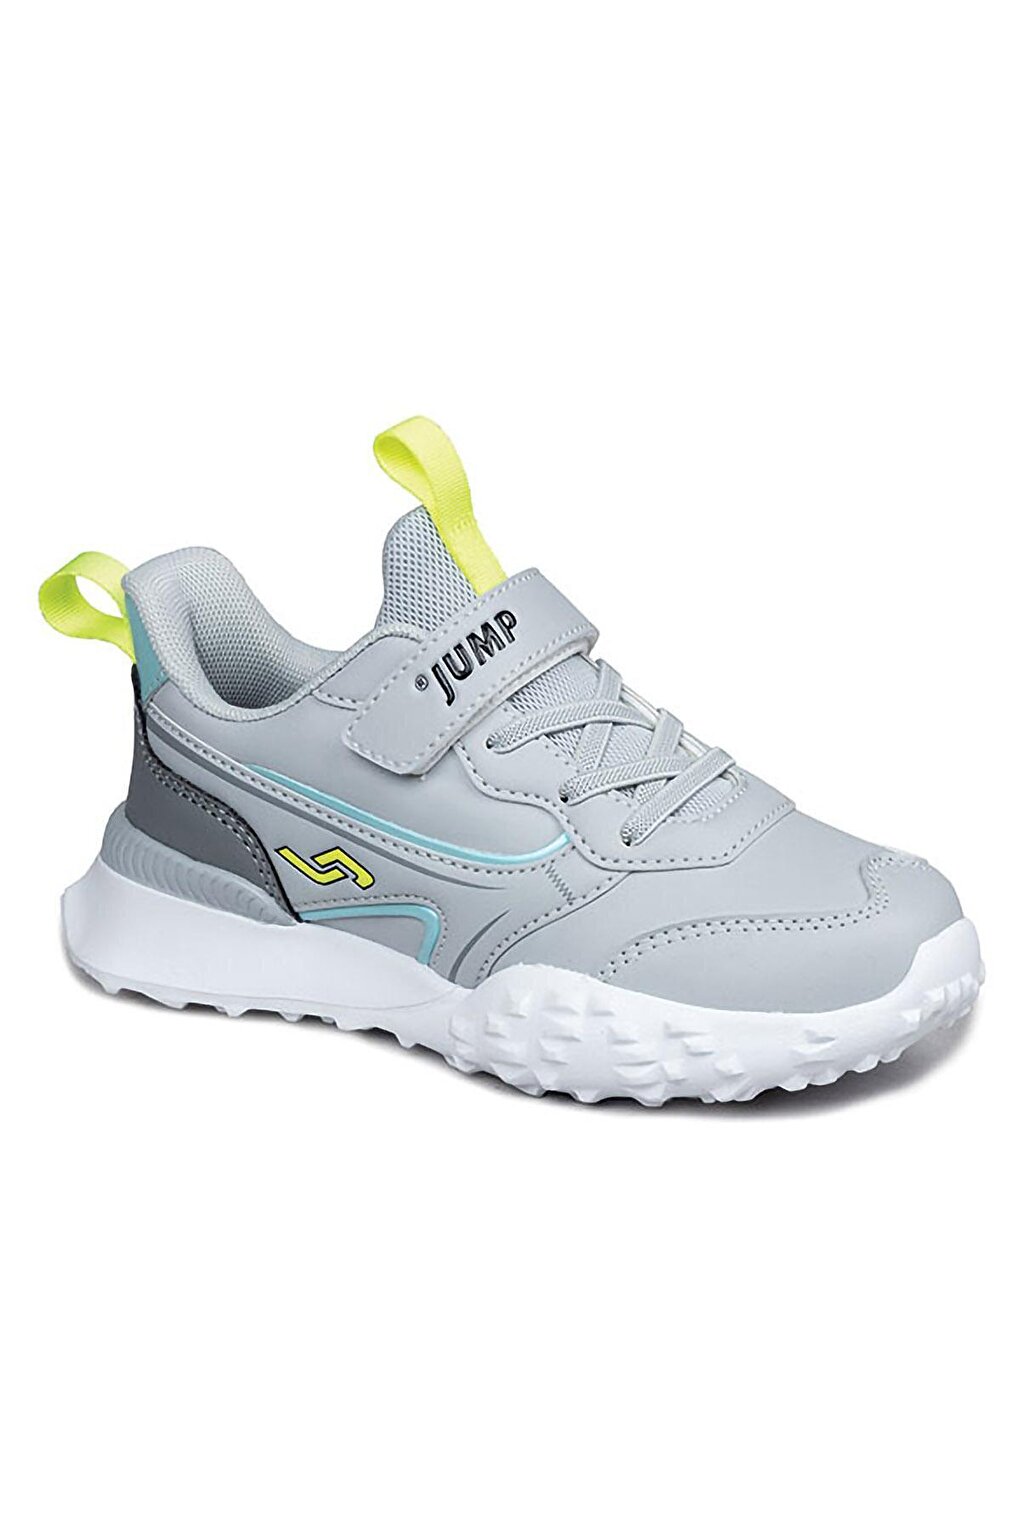 Детская спортивная обувь унисекс Jump, серо-зеленый proskit 8pk 021t 00263910 серо зеленый